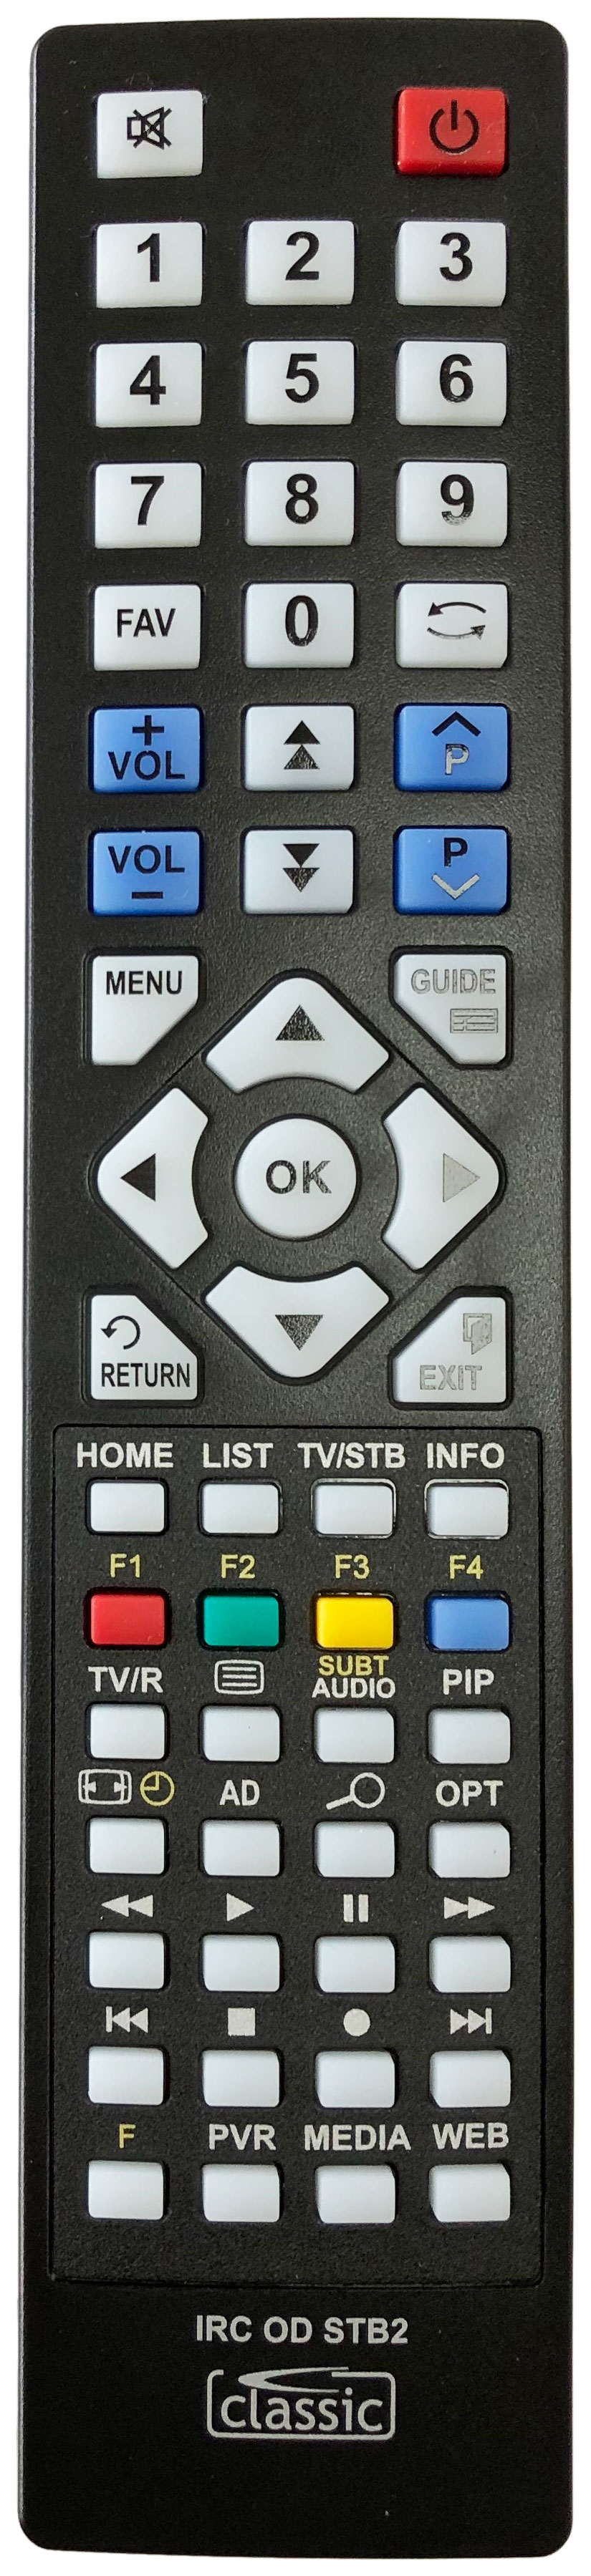 LUXOR TUTV2500 Remote Control Alternative